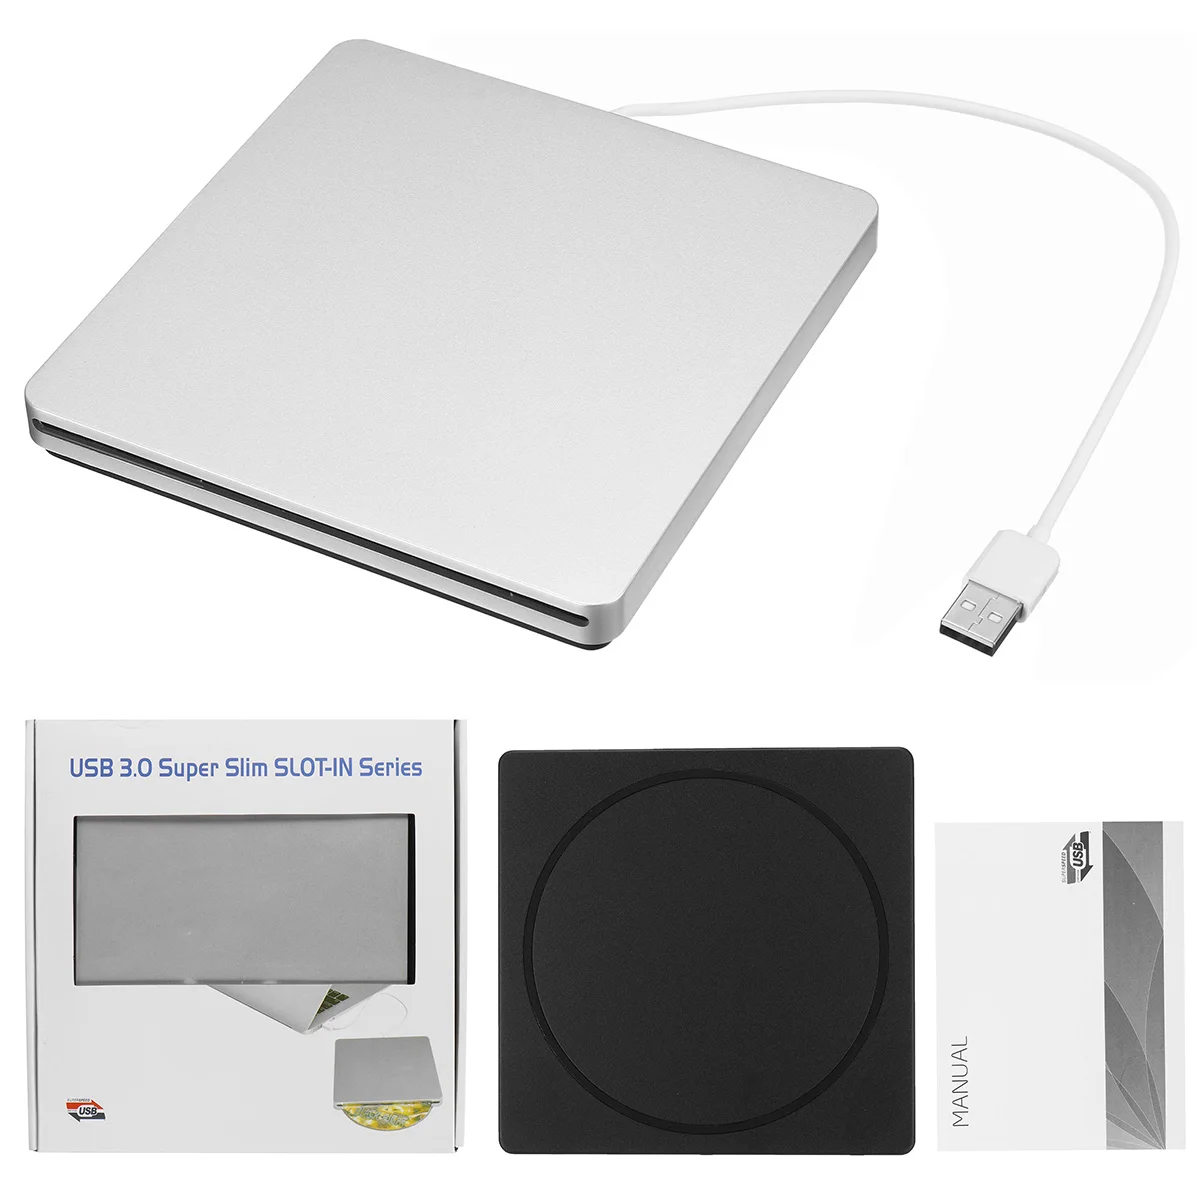 Внешний DVD привод RW для ноутбука и ПК тонкий USB 3 0 оптические приводы|Оптические